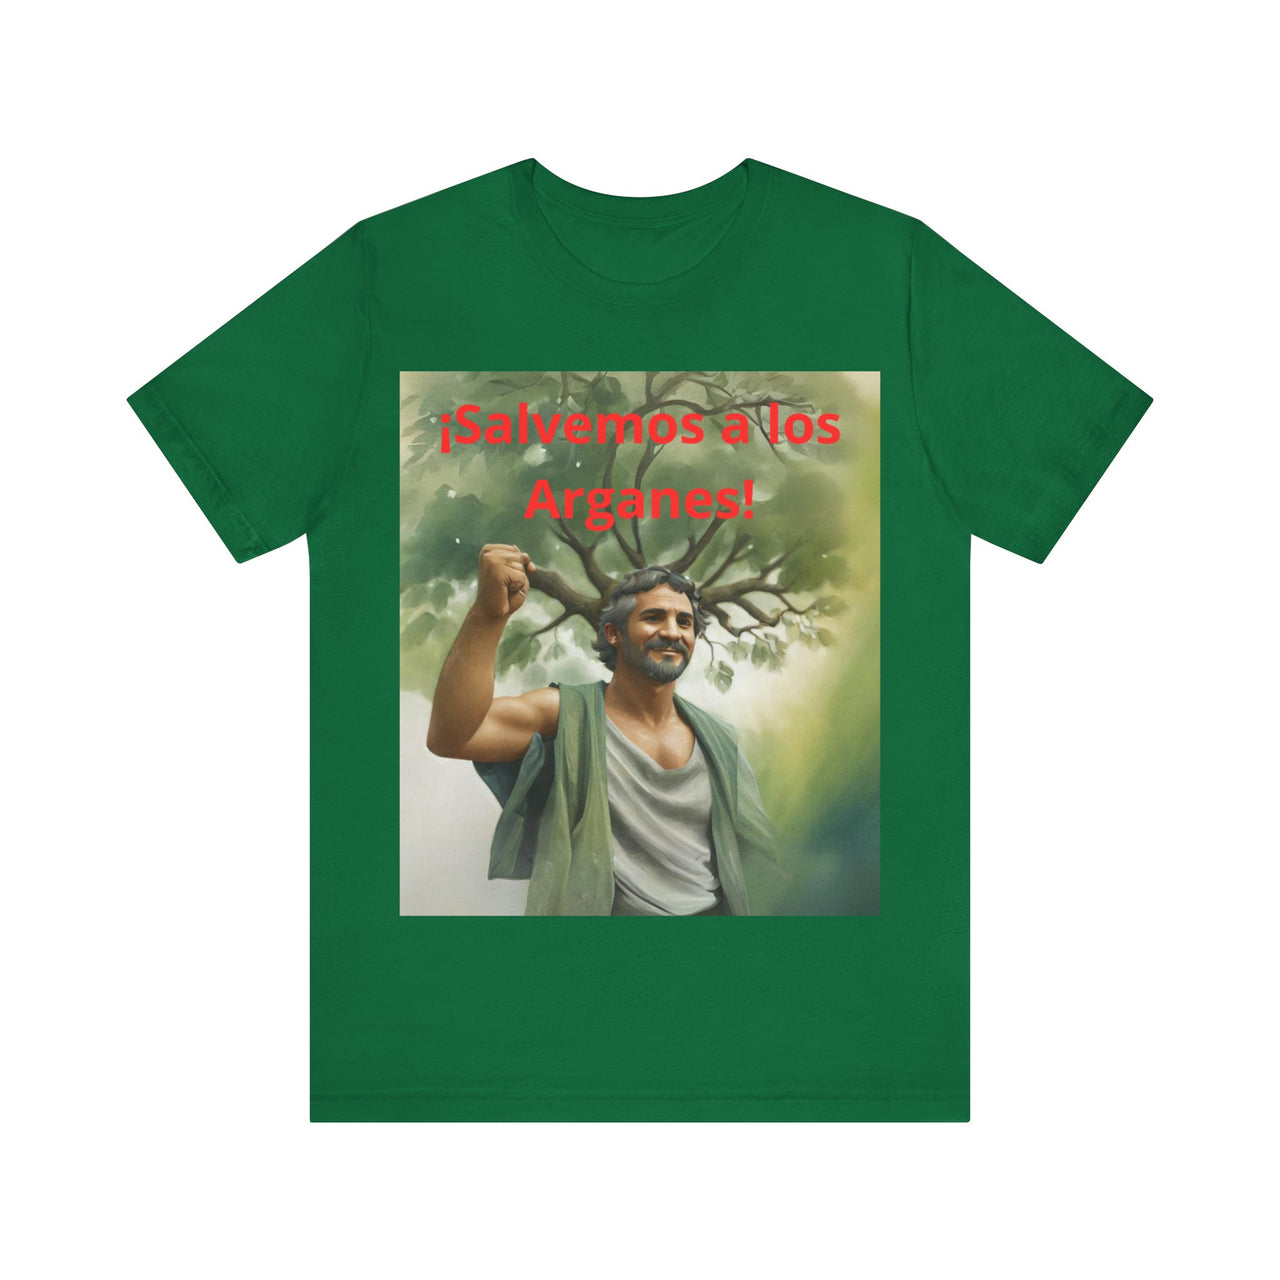 Camiseta Unisex Día Internacional de los Arganes, Camiseta reivindicativa, Camiseta conmemorativa